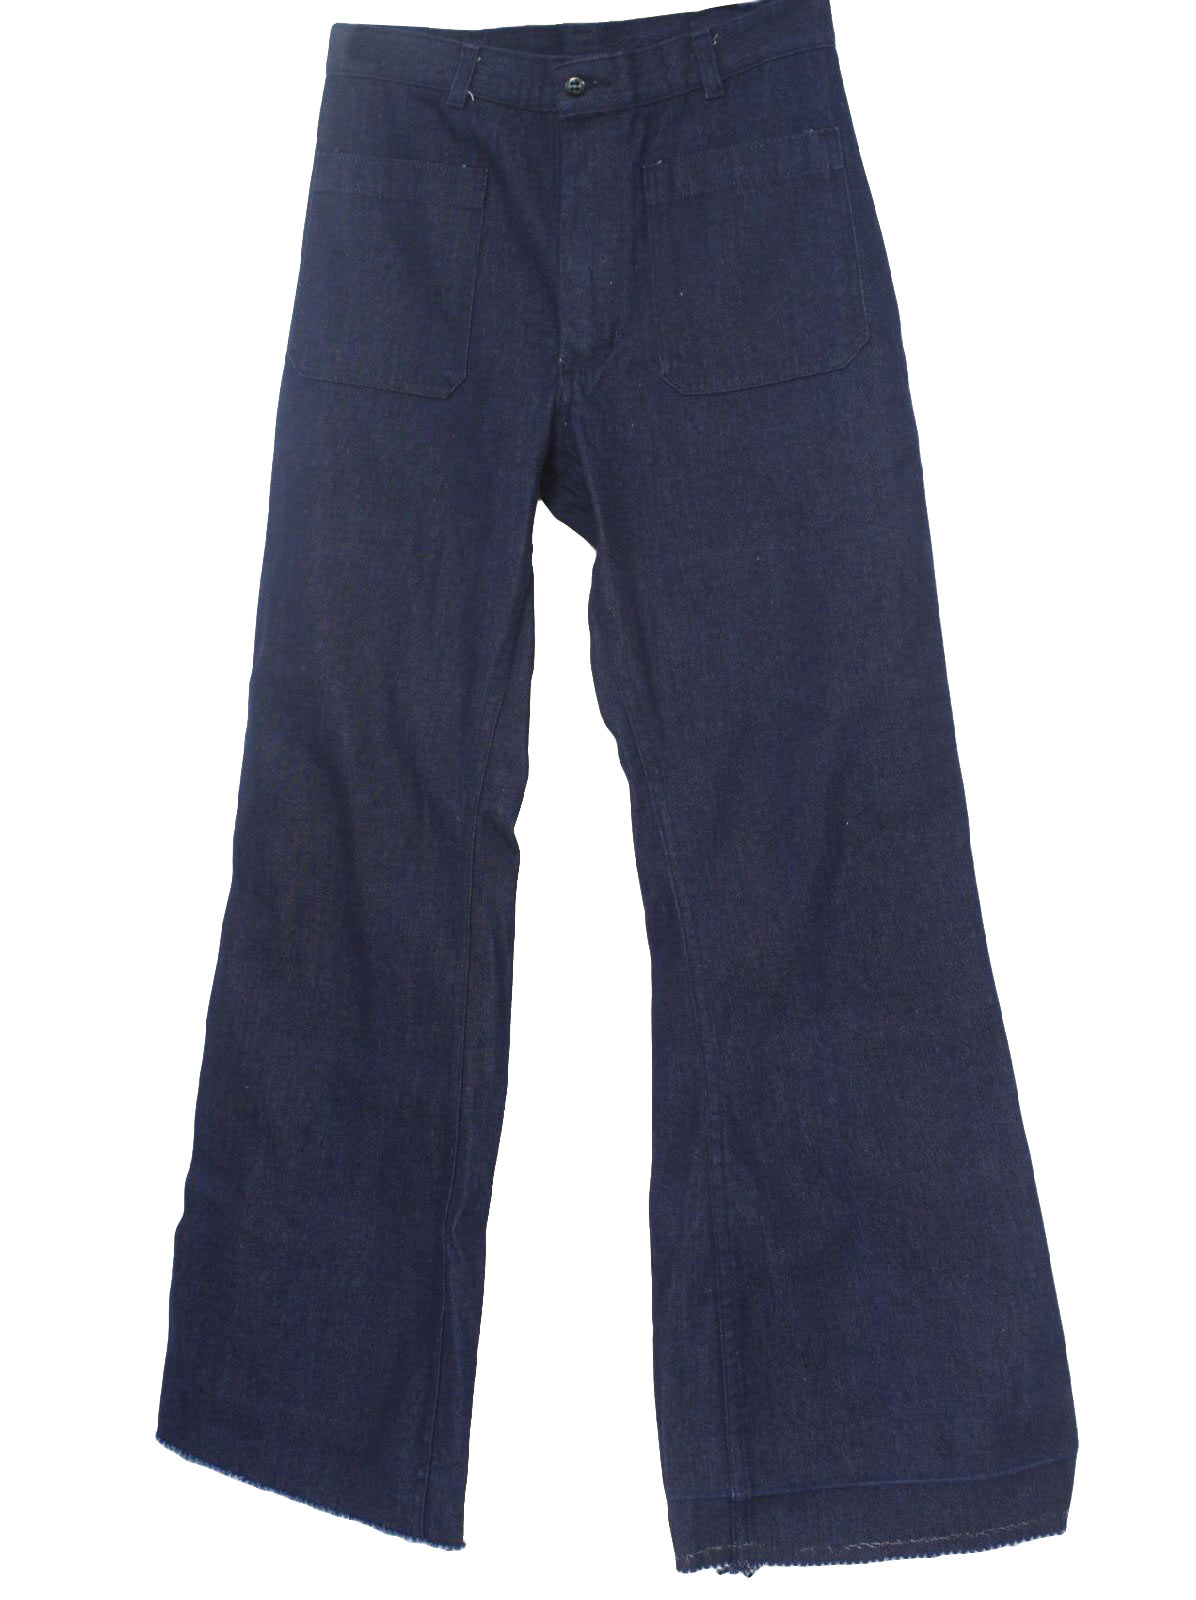 Gibraltar 70's Vintage Bellbottom Pants: 70s -Gibraltar- Mens dark blue ...